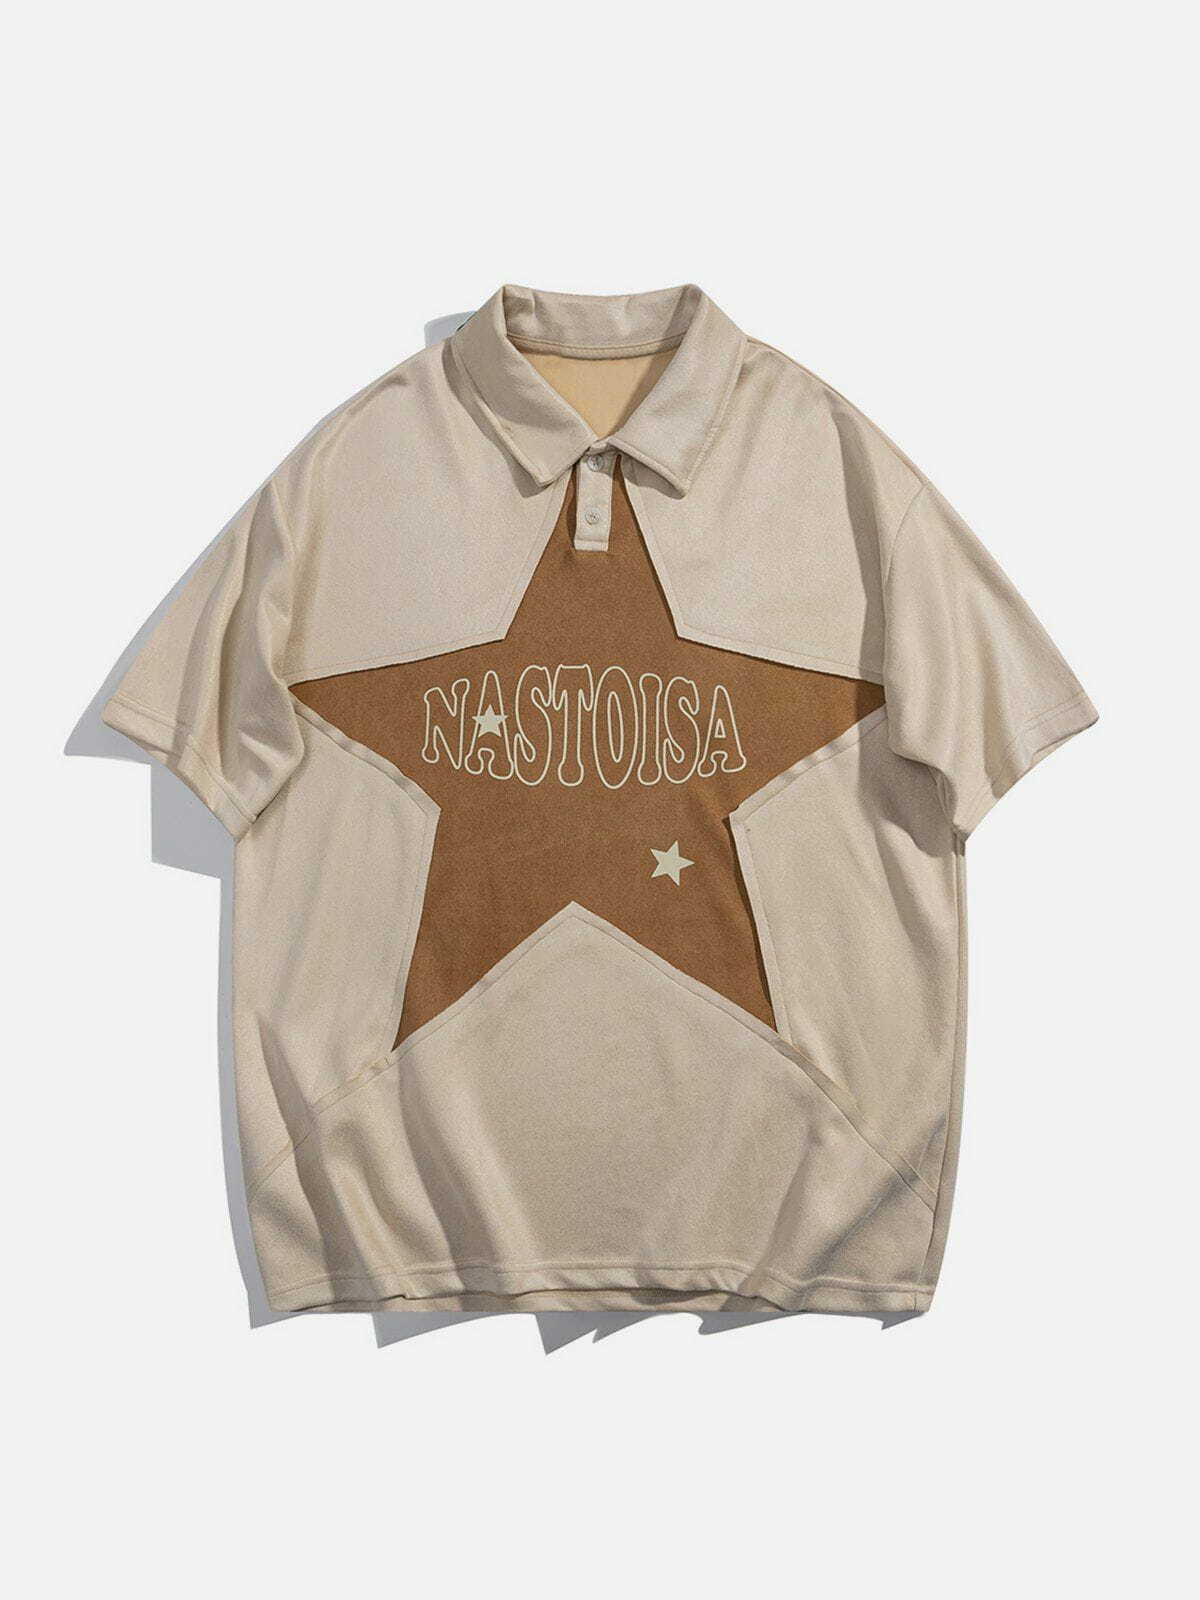 retro star polo tshirt edgy and vibrant y2k streetwear 3584